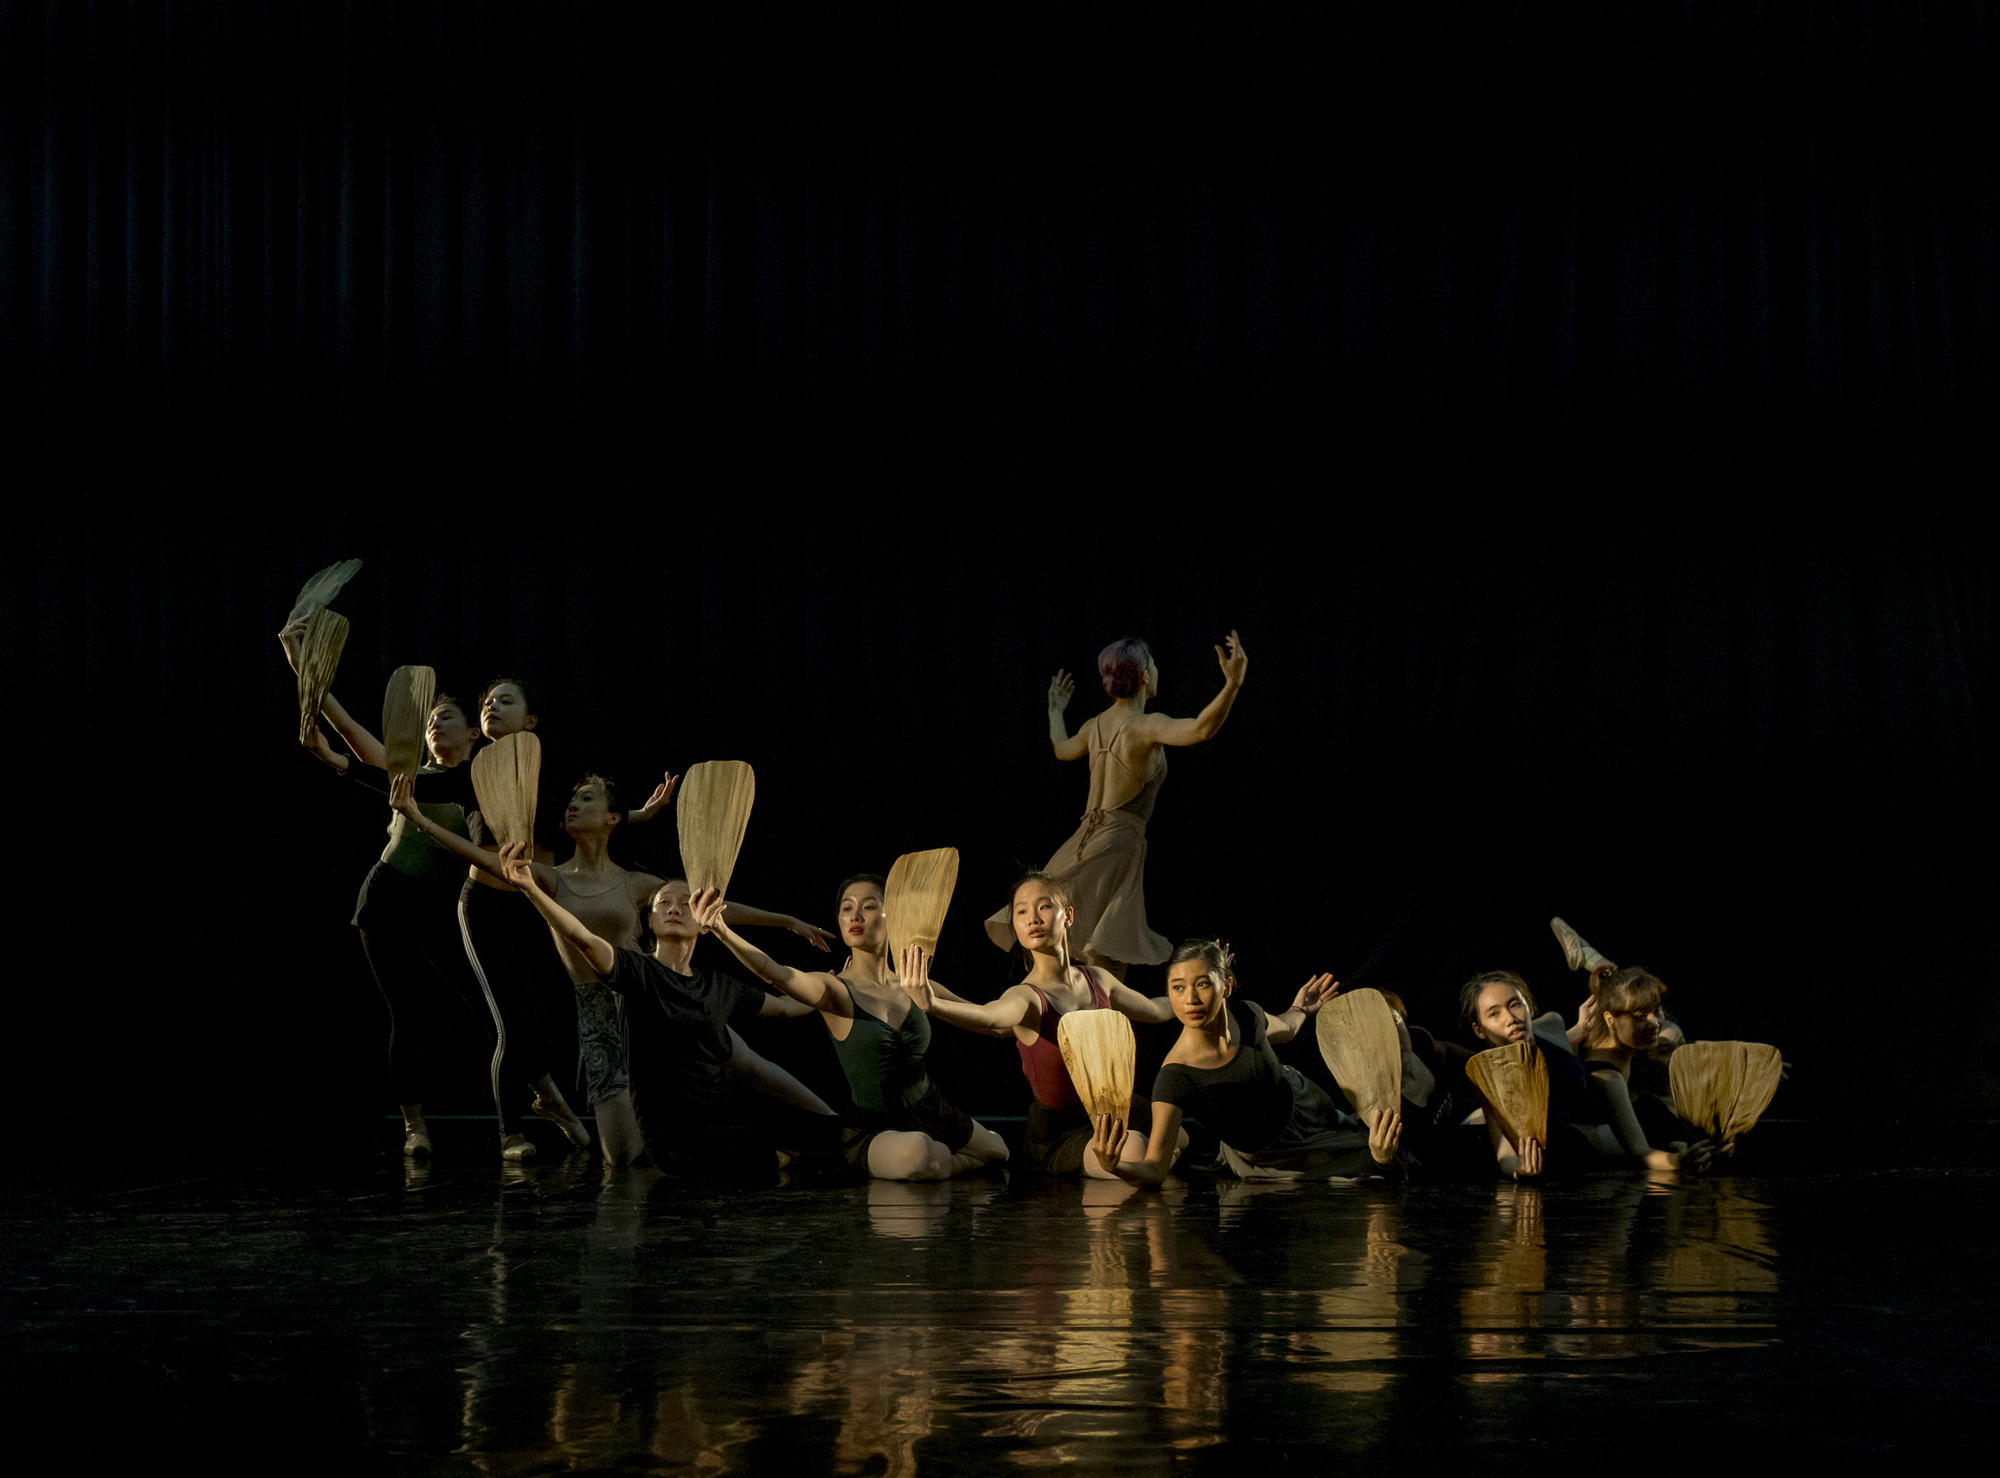 Lần đầu tiên Truyện Kiều được thể hiện bằng nghệ thuật ballet - Ảnh 1.